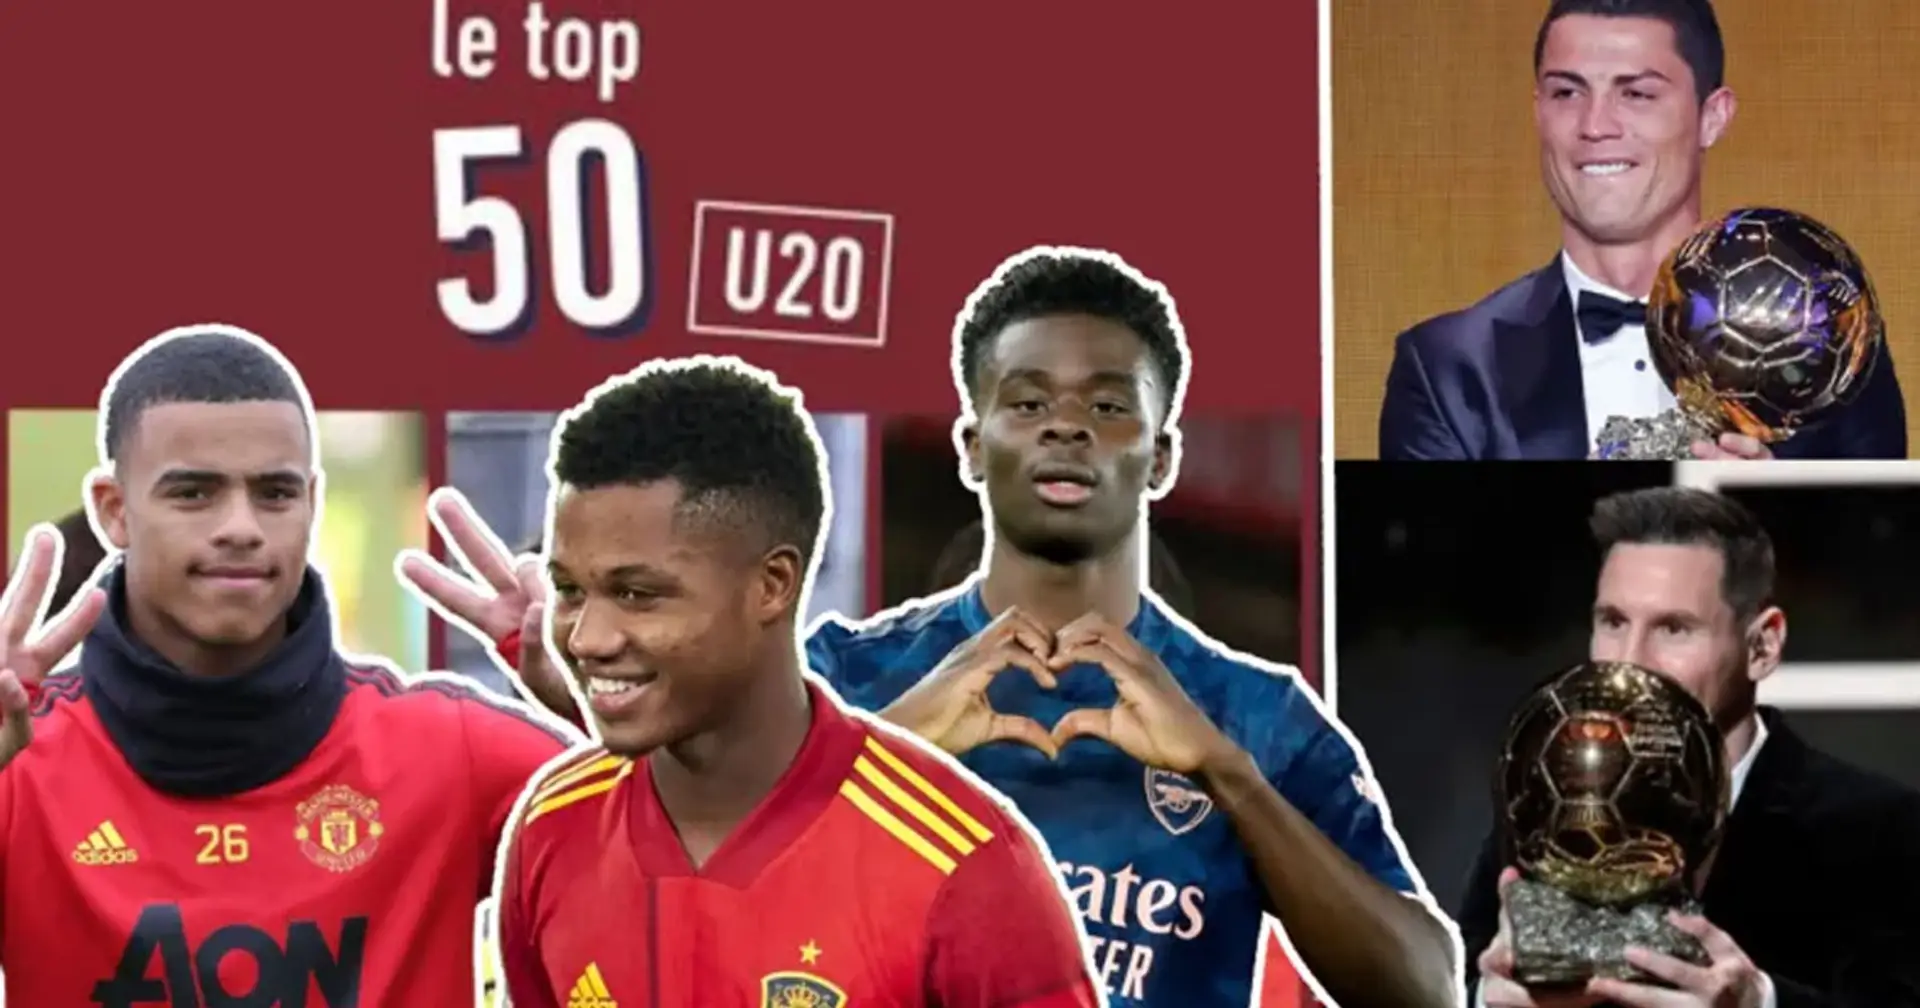 L'Equipe ha nominato i 10 migliori giocatori under 20 - sono il futuro del calcio 